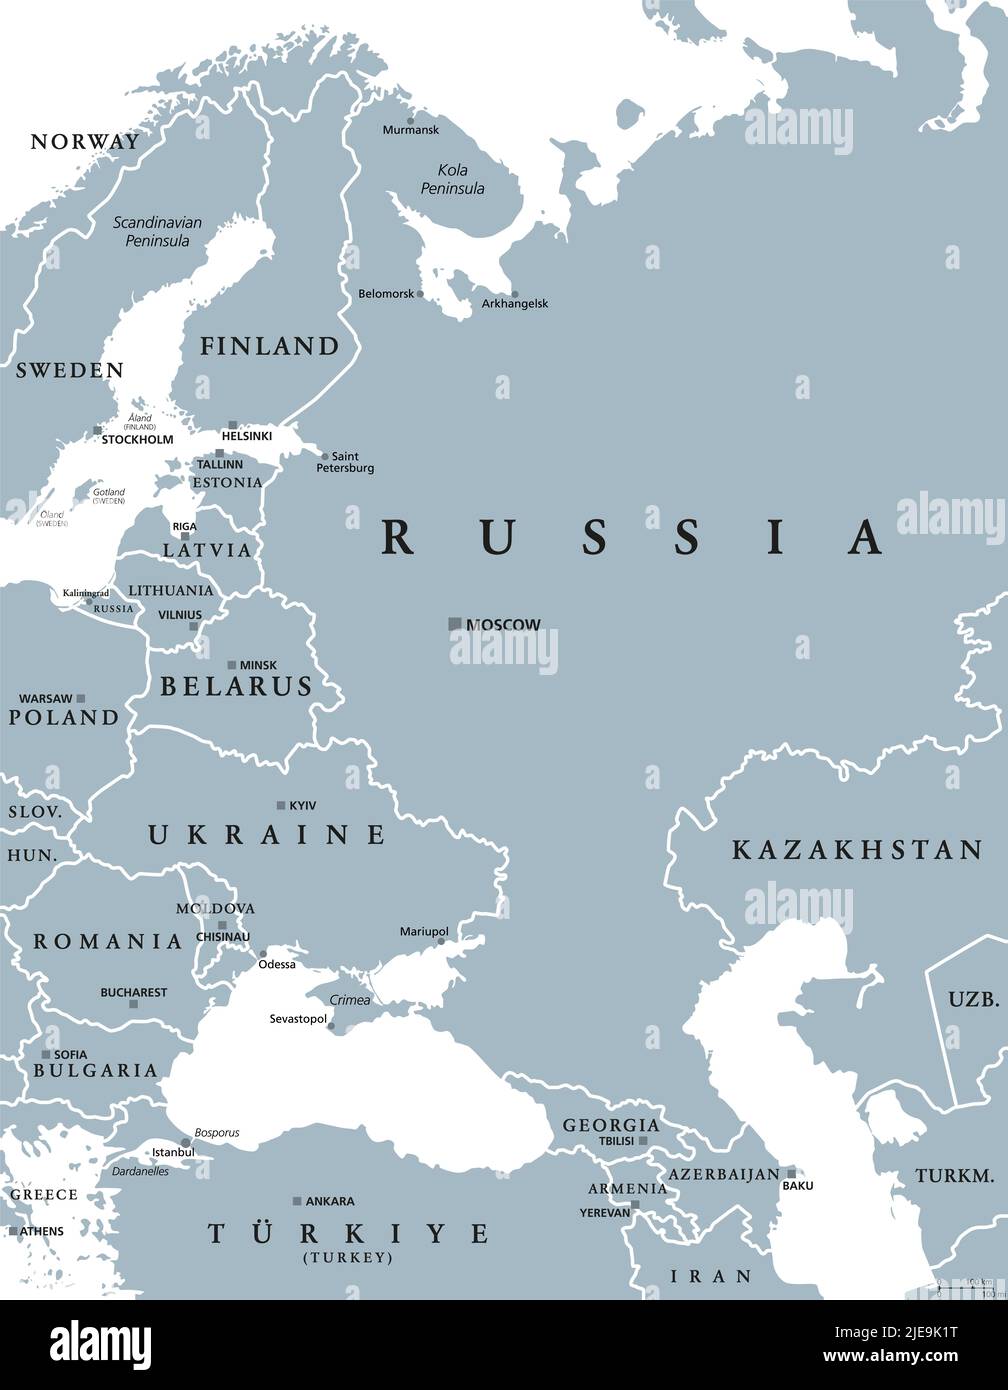 Europa Oriental y Asia Occidental, mapa político gris. Con el Mar Negro, el Mar Caspio, la Rusia europea, y con una parte de Asia Central. Foto de stock